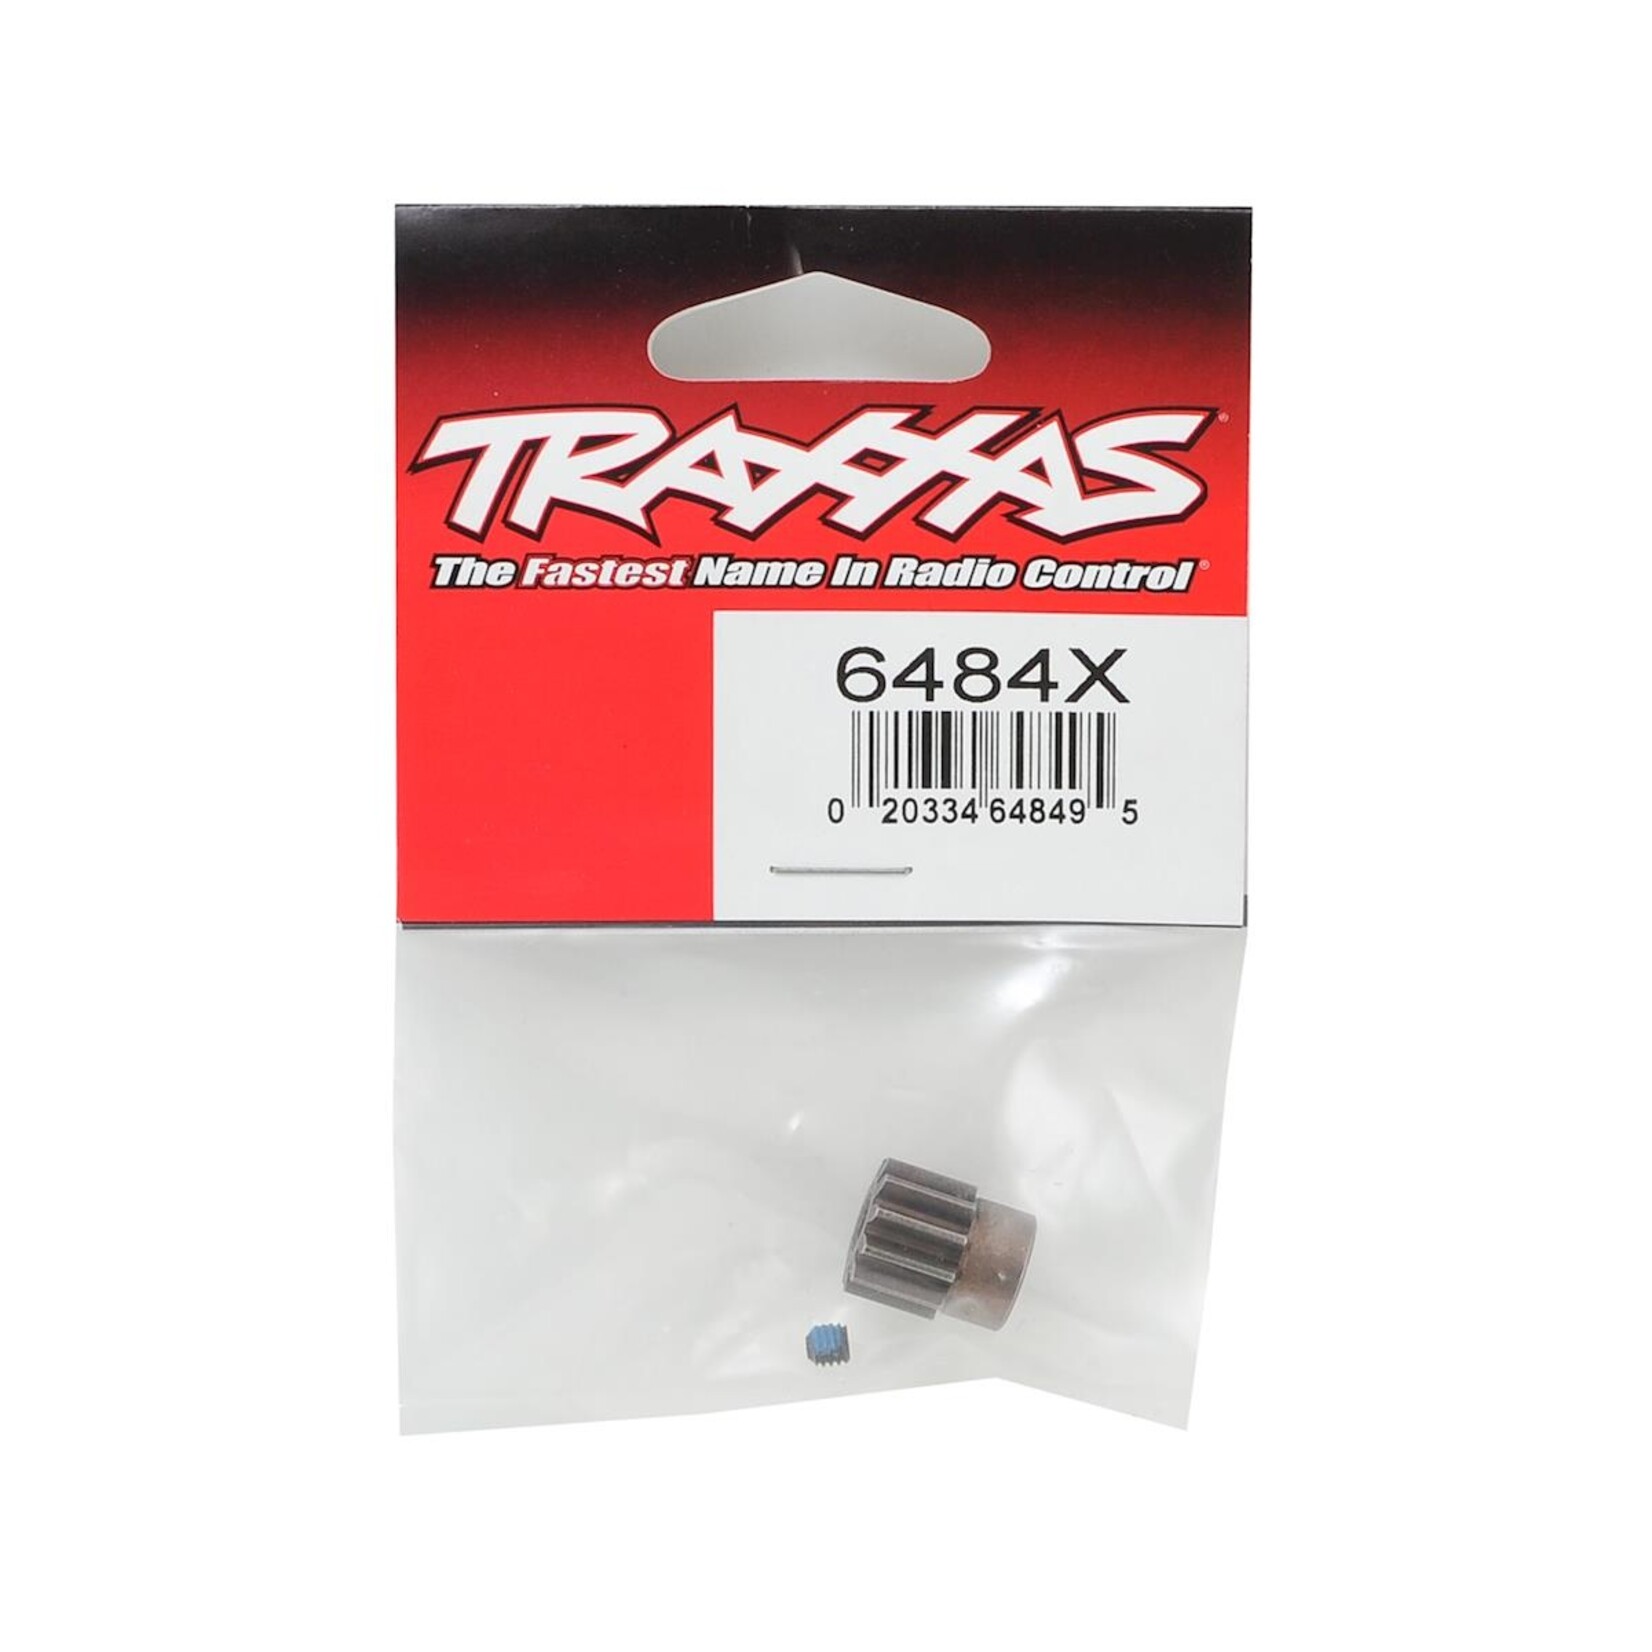 Traxxas Traxxas Hardened Steel Mod 1.0 Pinion Gear w/5mm Bore (11T) #6484X